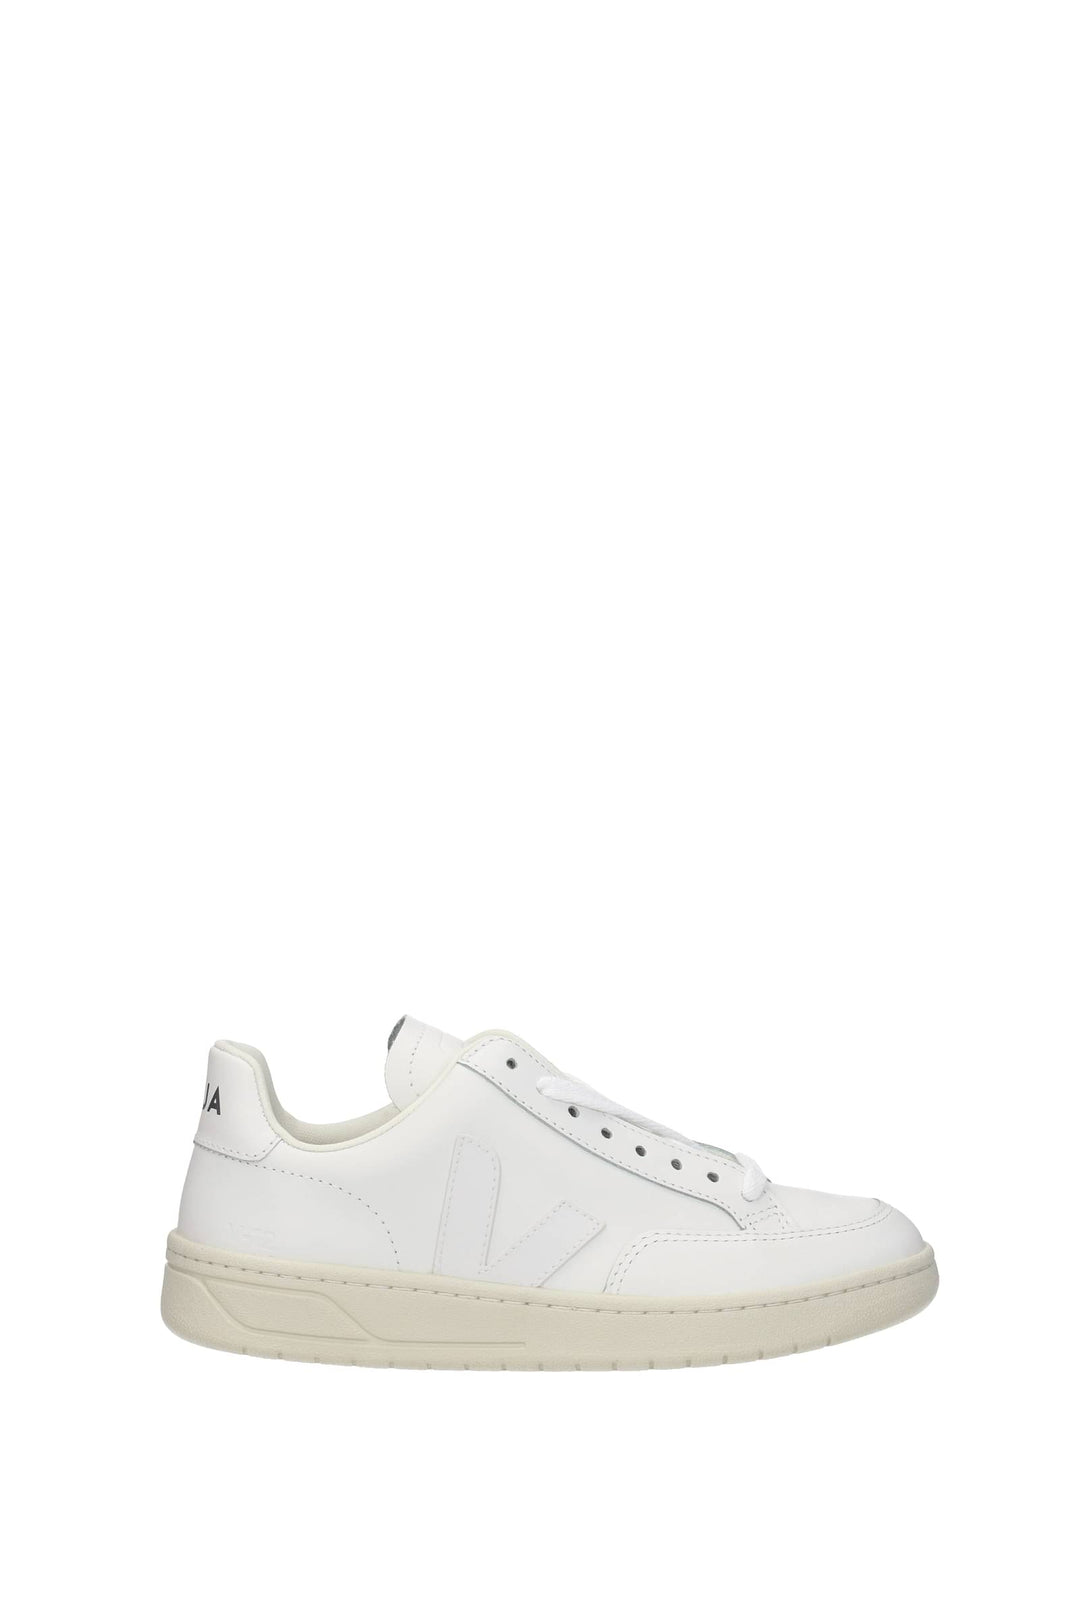 Sneakers V 12 Pelle Bianco Bianco - Veja - Donna